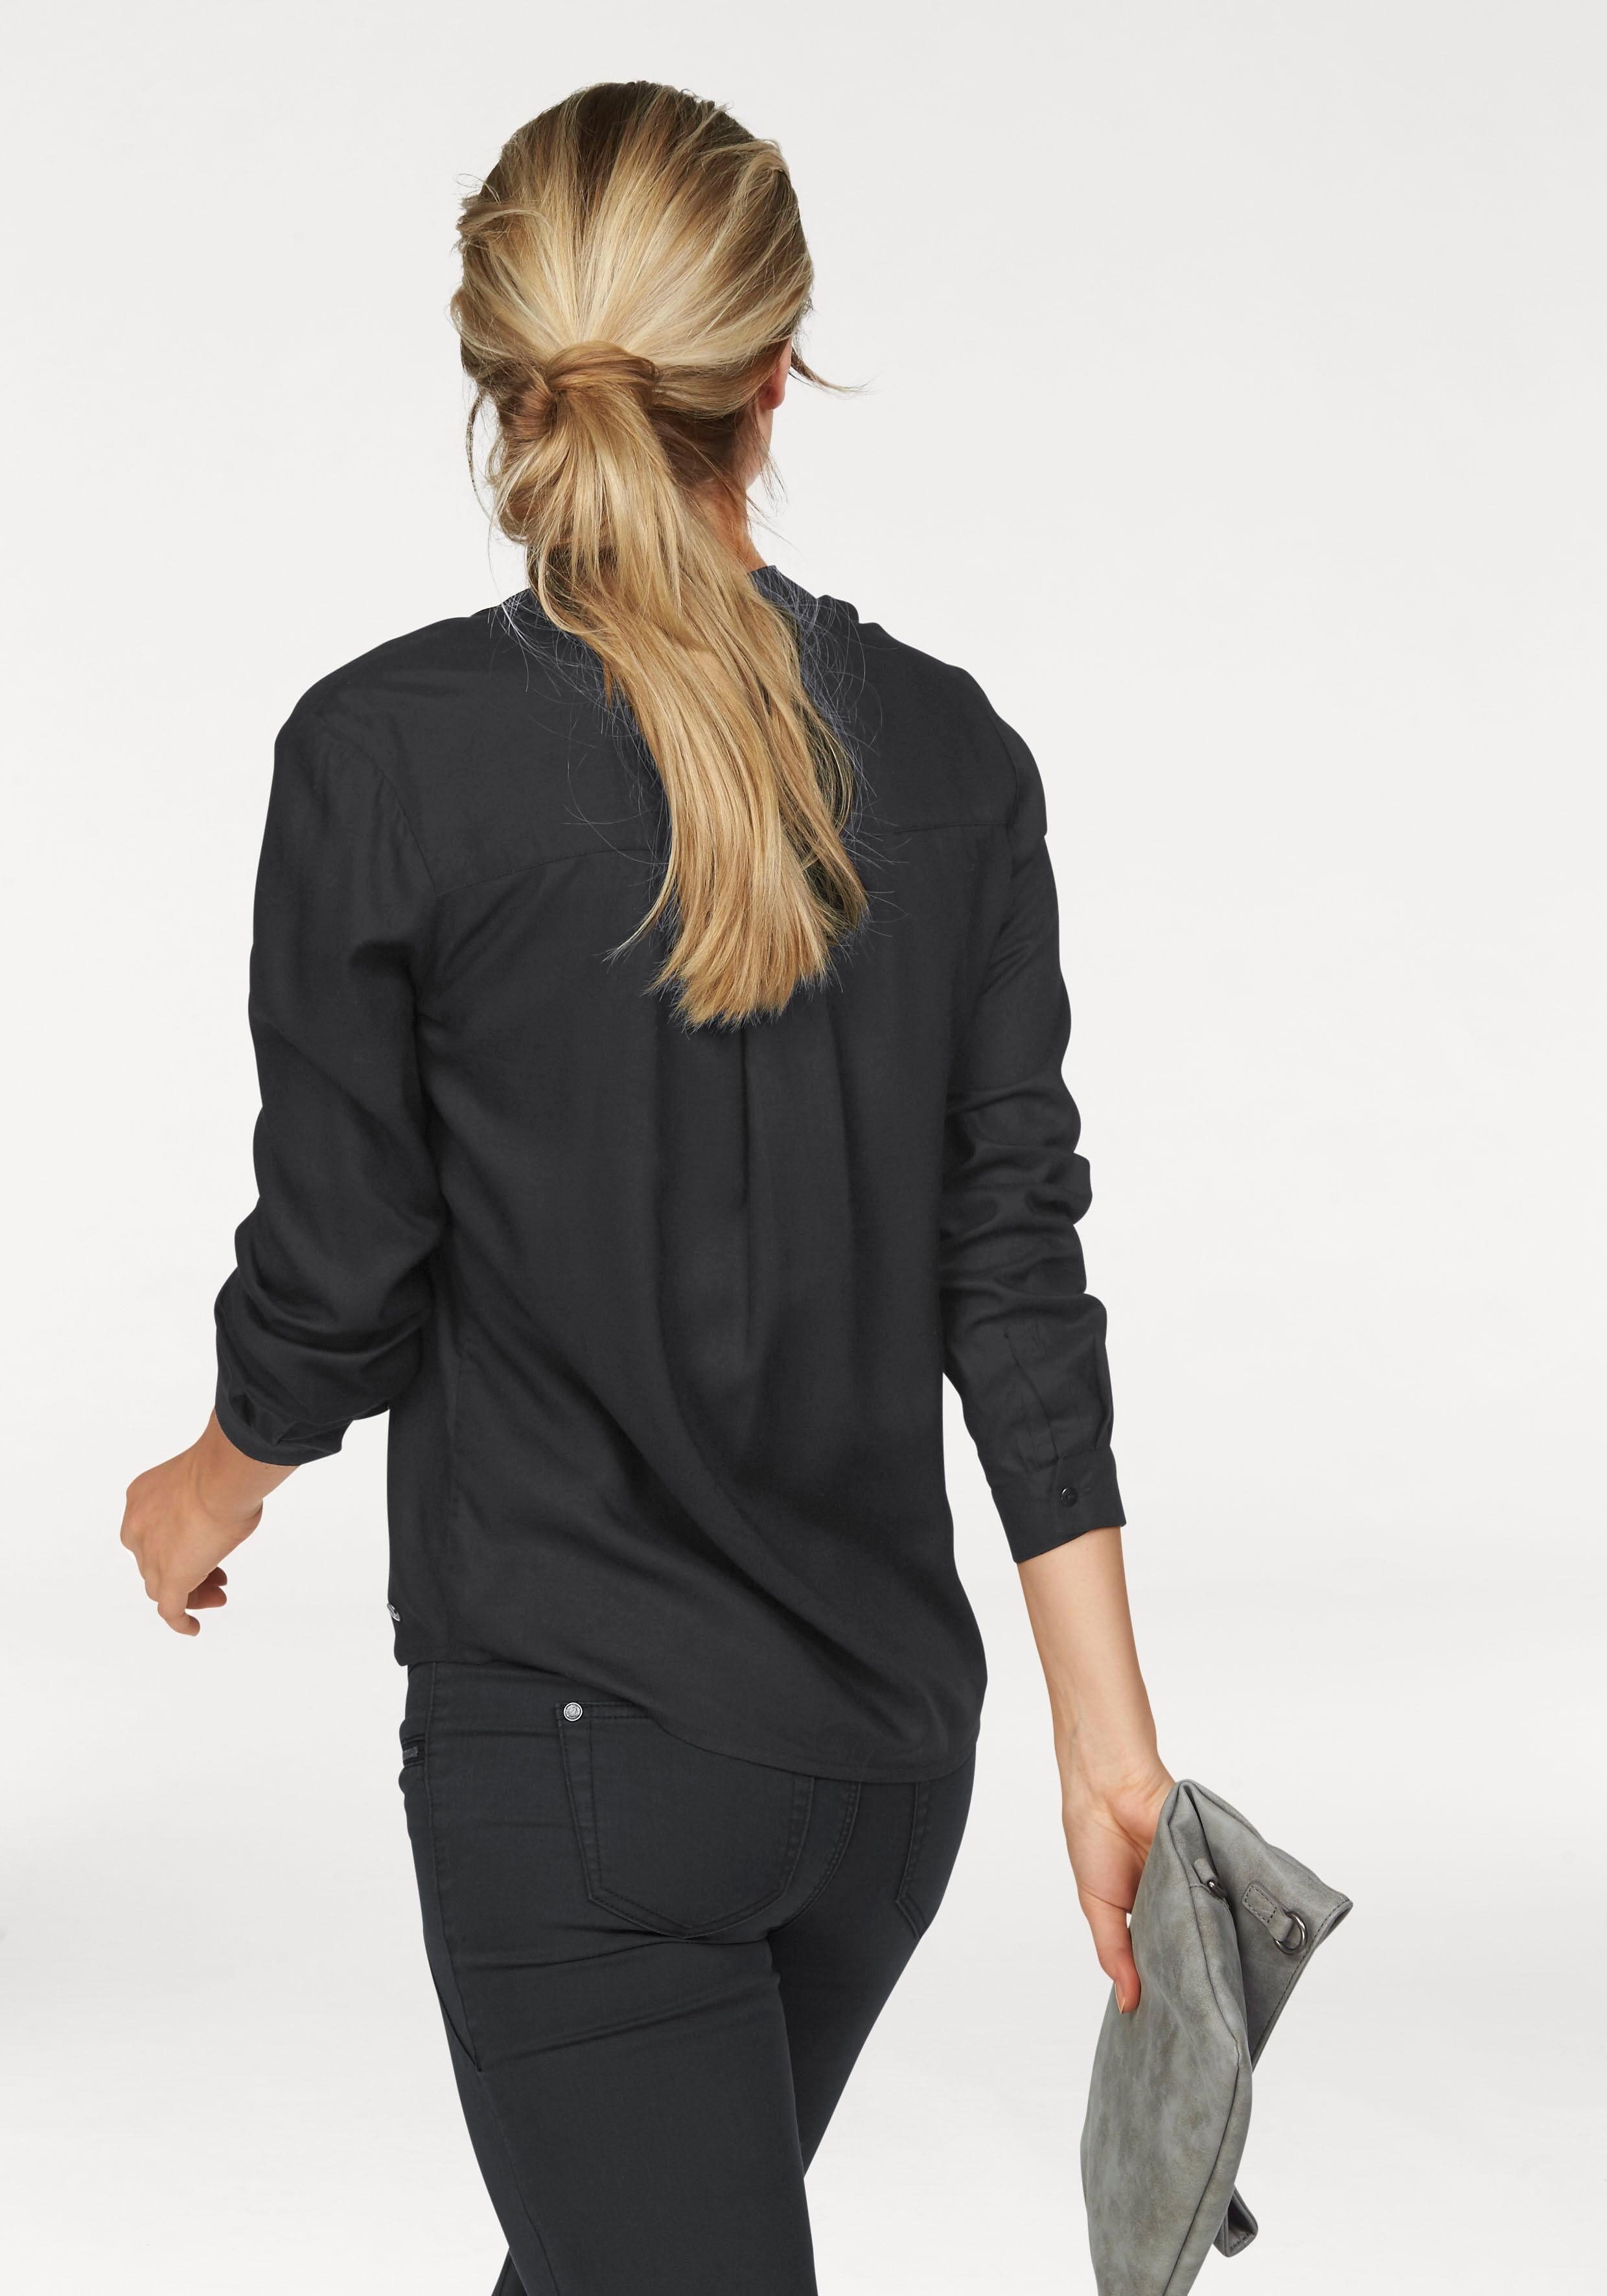 AJC Hemdbluse oder unterschiedlichen nachhaltigem Material) aus Druckvarianten in mit Uni schwarz (Bluse